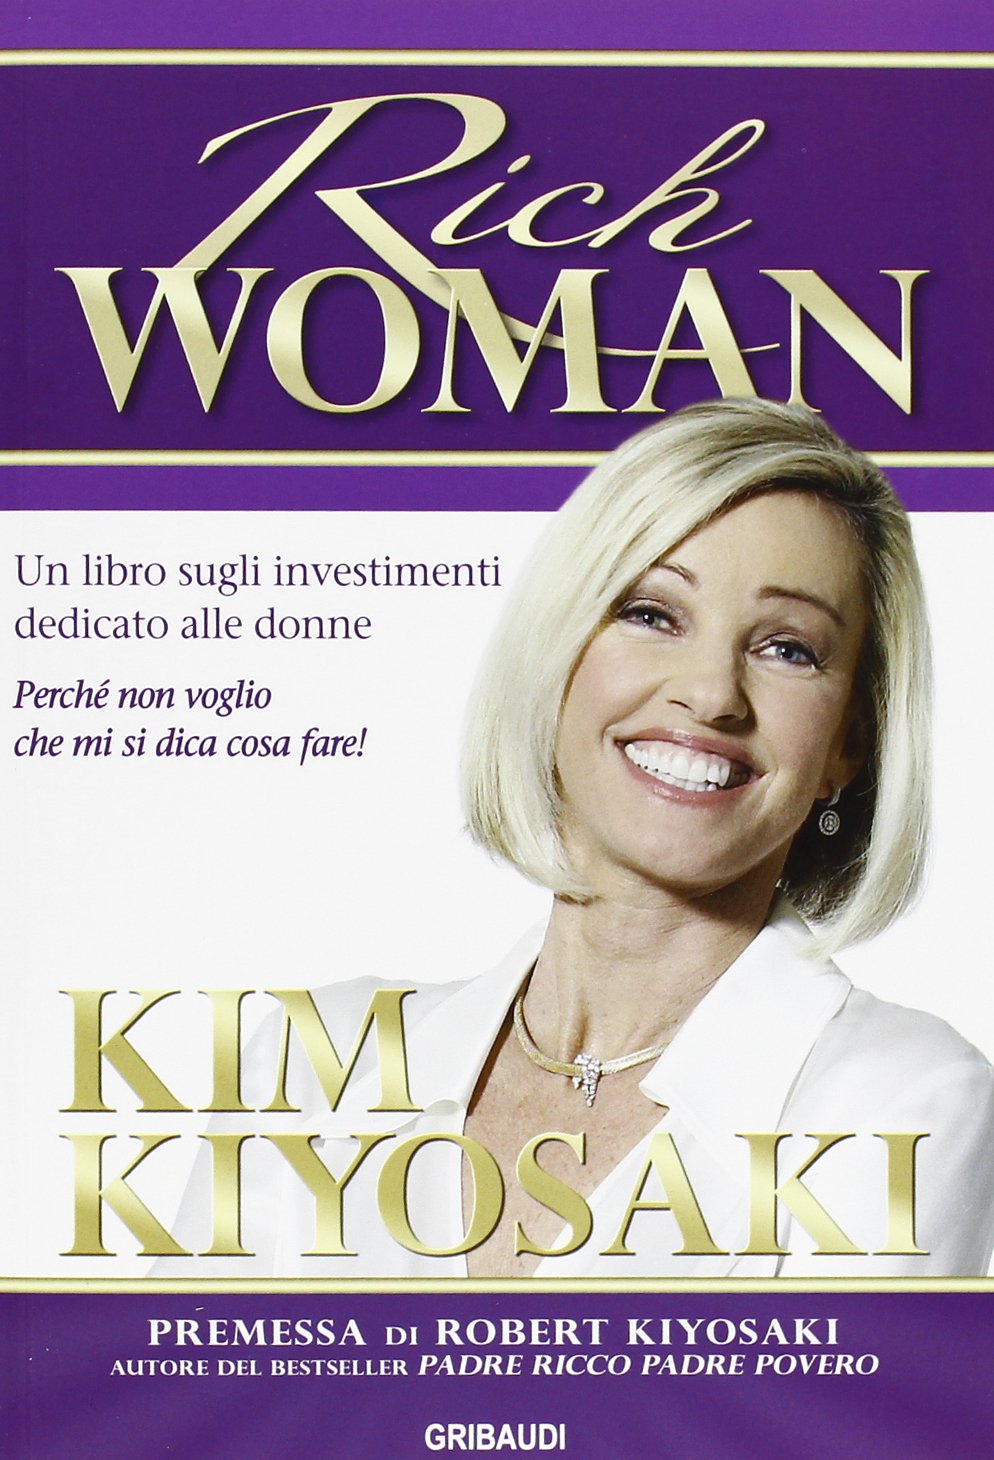 Kim Kiyosaki - Rich woman - Clicca l'immagine per chiudere